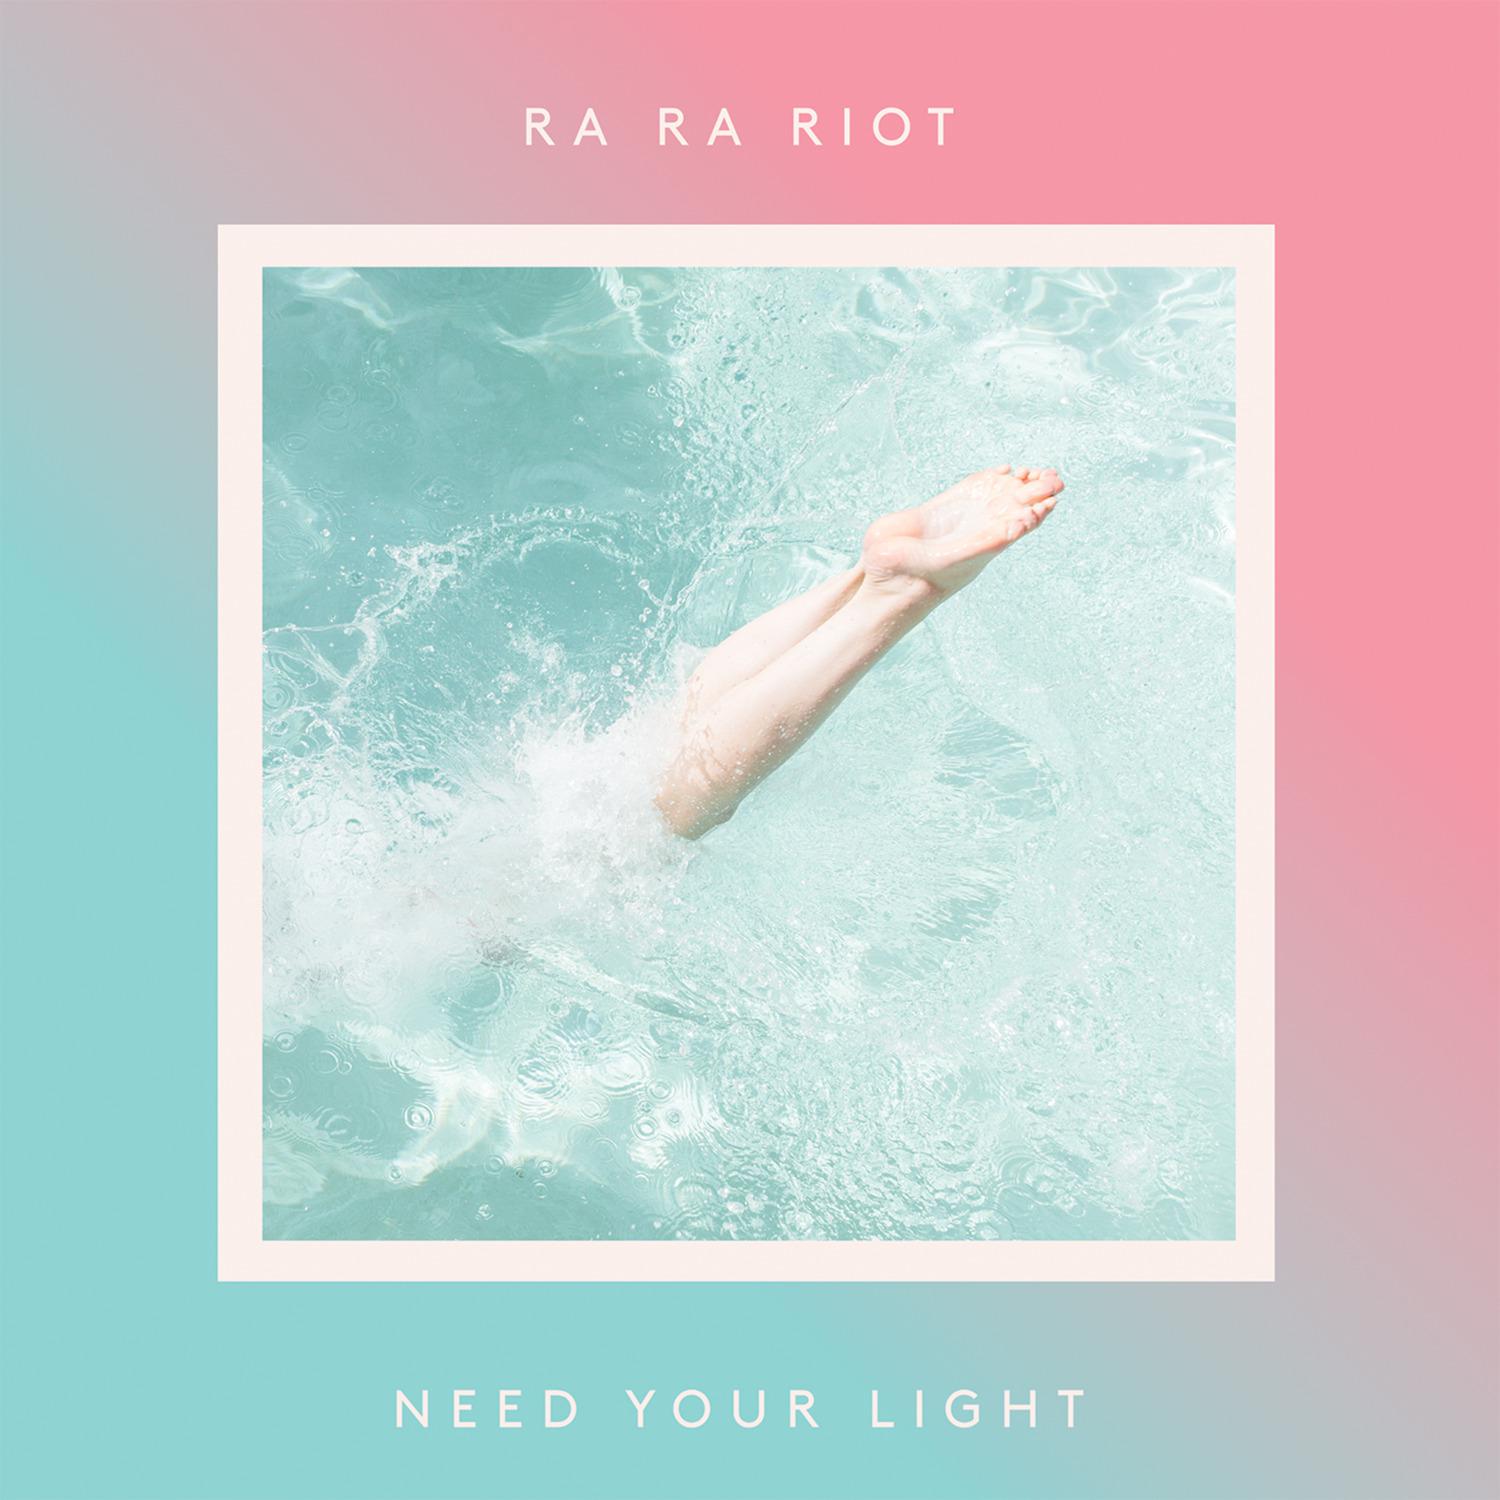 Ra Ra Riot - Everytime I'm Ready to Hug